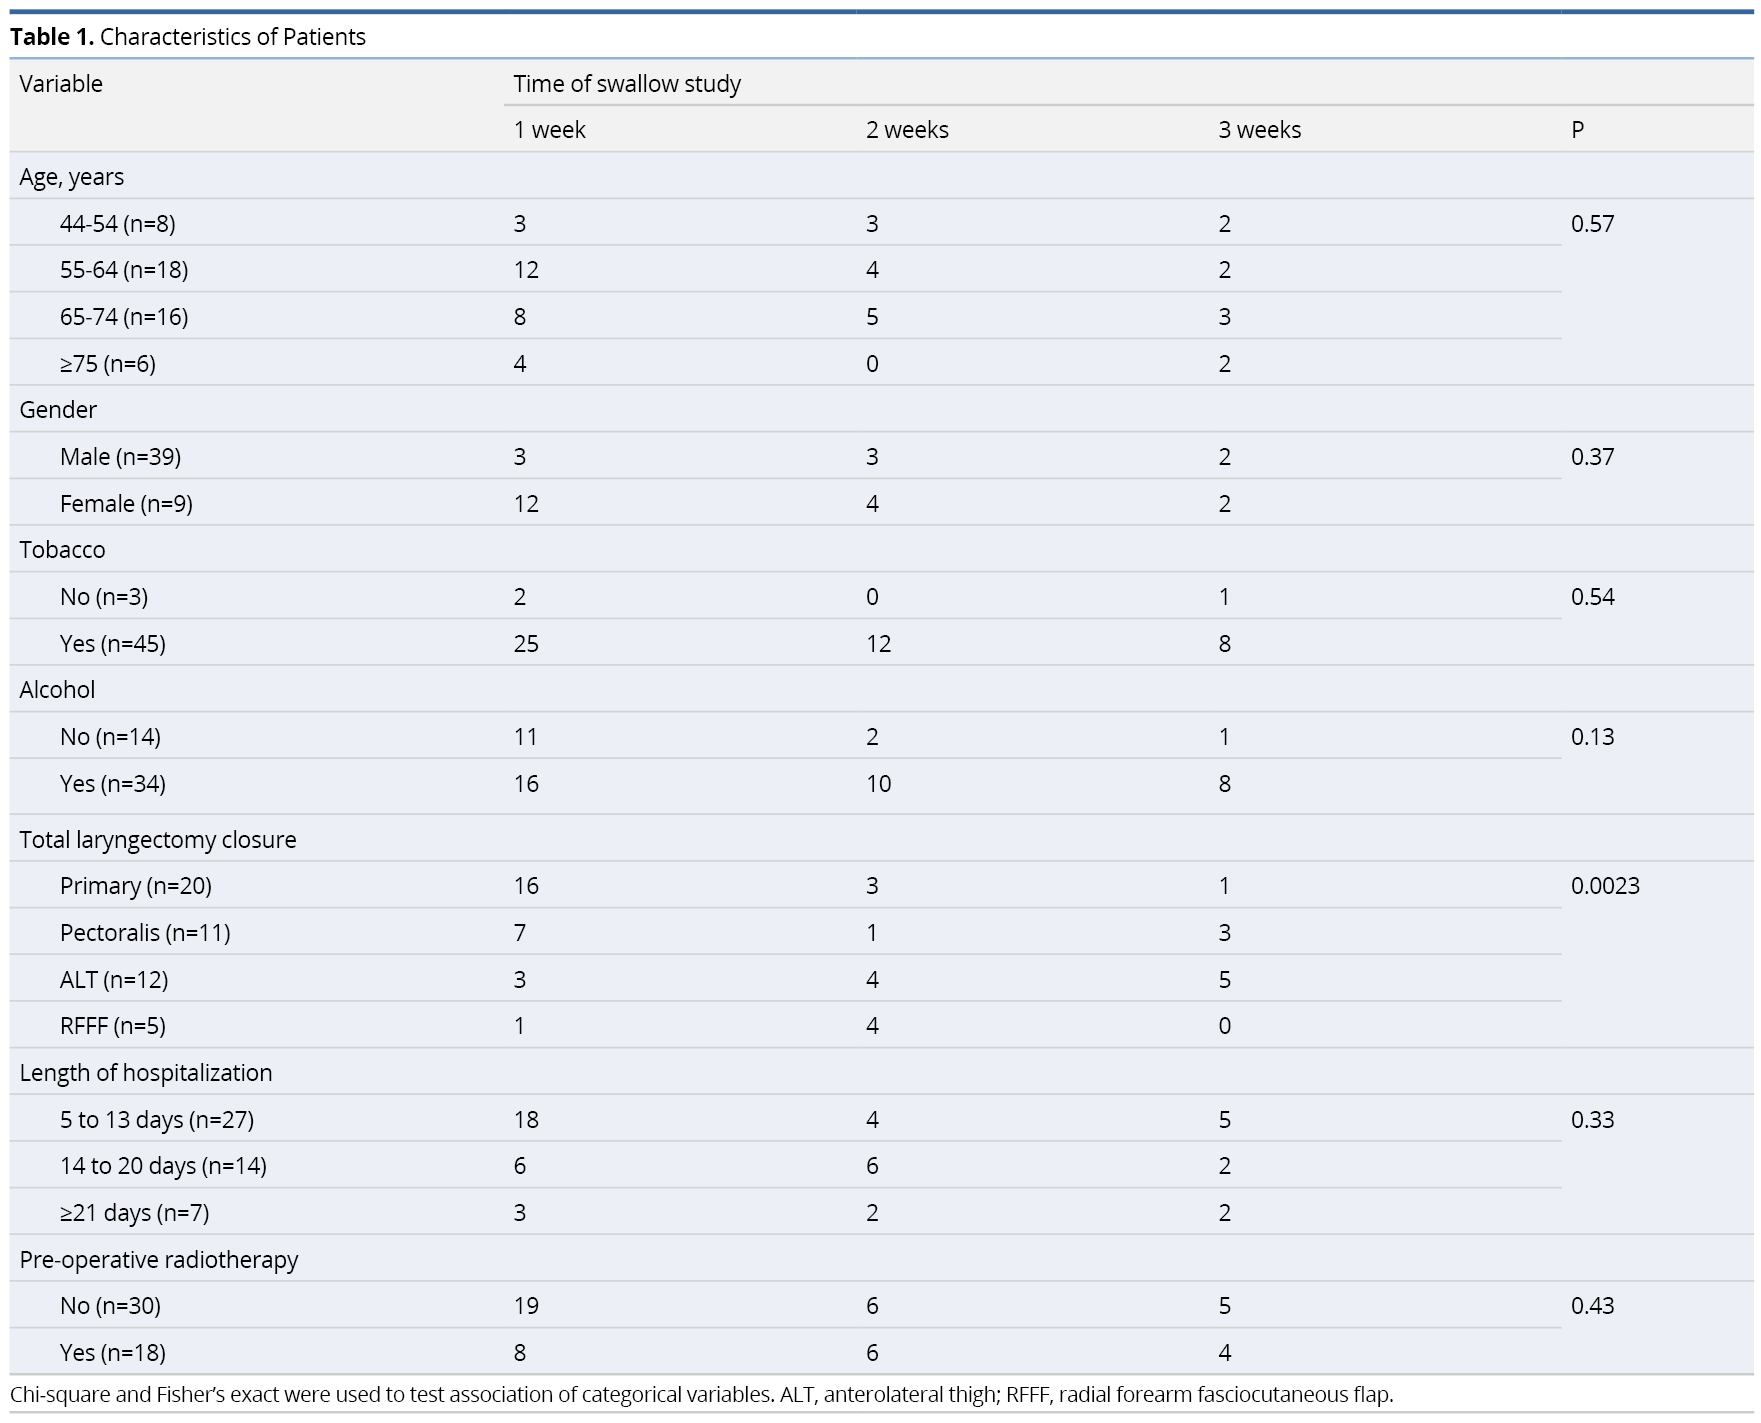 Table 1.pngCharacteristics of Patients